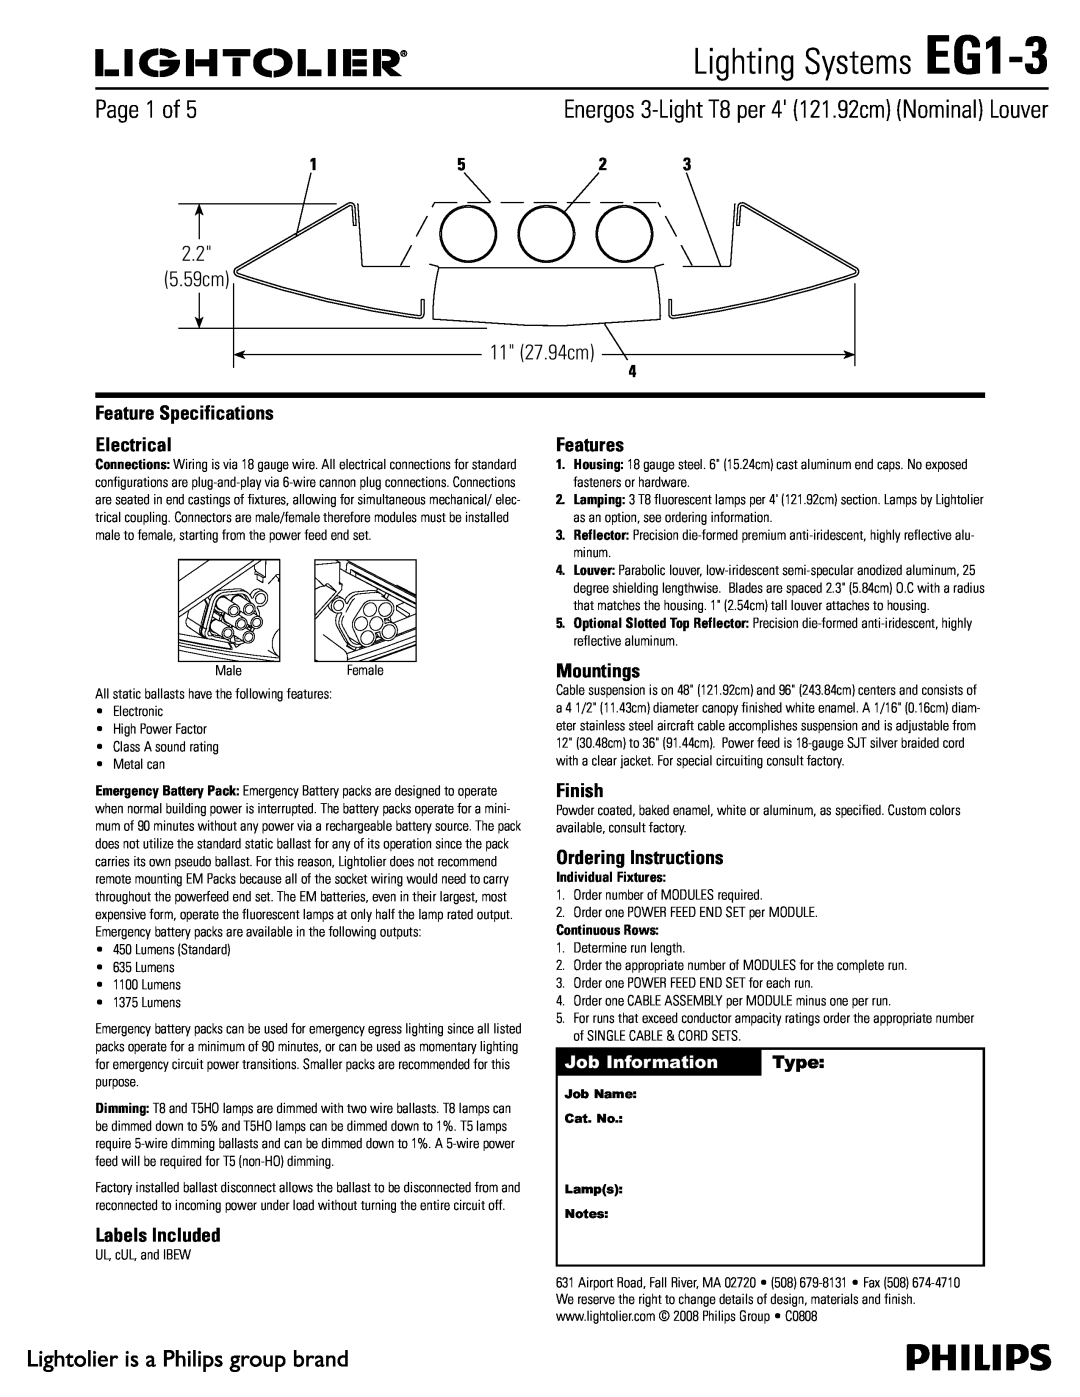 Lightolier specifications Lighting Systems EG1-3,  Dn  Dn, Job Information, Type 